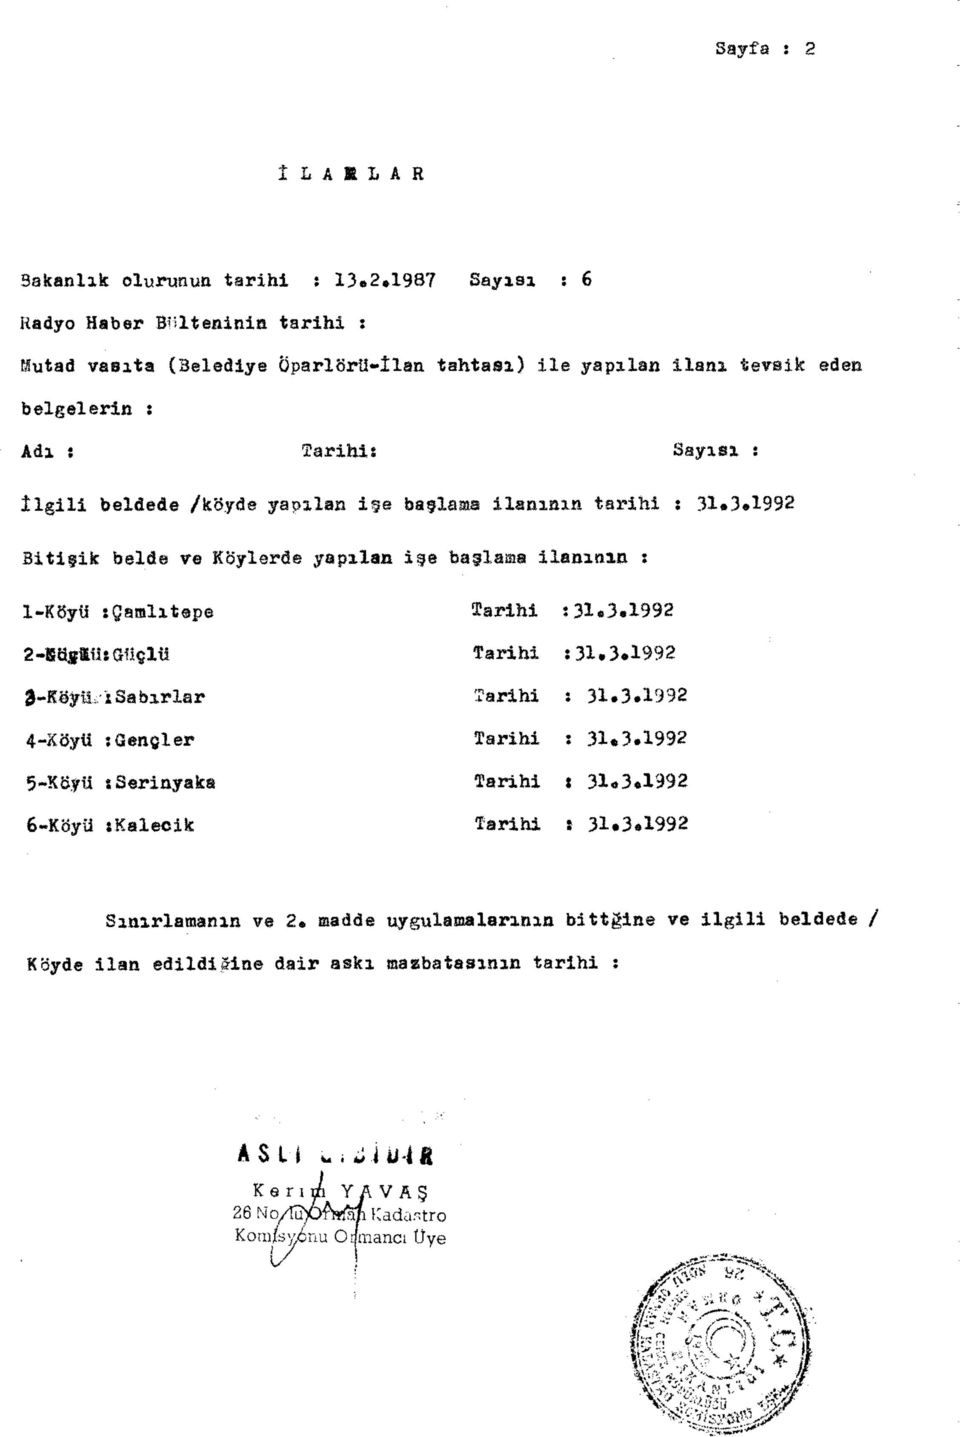 1987 Sayısı s 6 Radyo Haber Bülteninin tarihi : Mutad vasıta (Belediye Öparlörü-İlan tahtası) ile yapılan ilanı tevsik eden belgelerin : Adı : tarihi: Sayısı s İlgili beldede /köyde